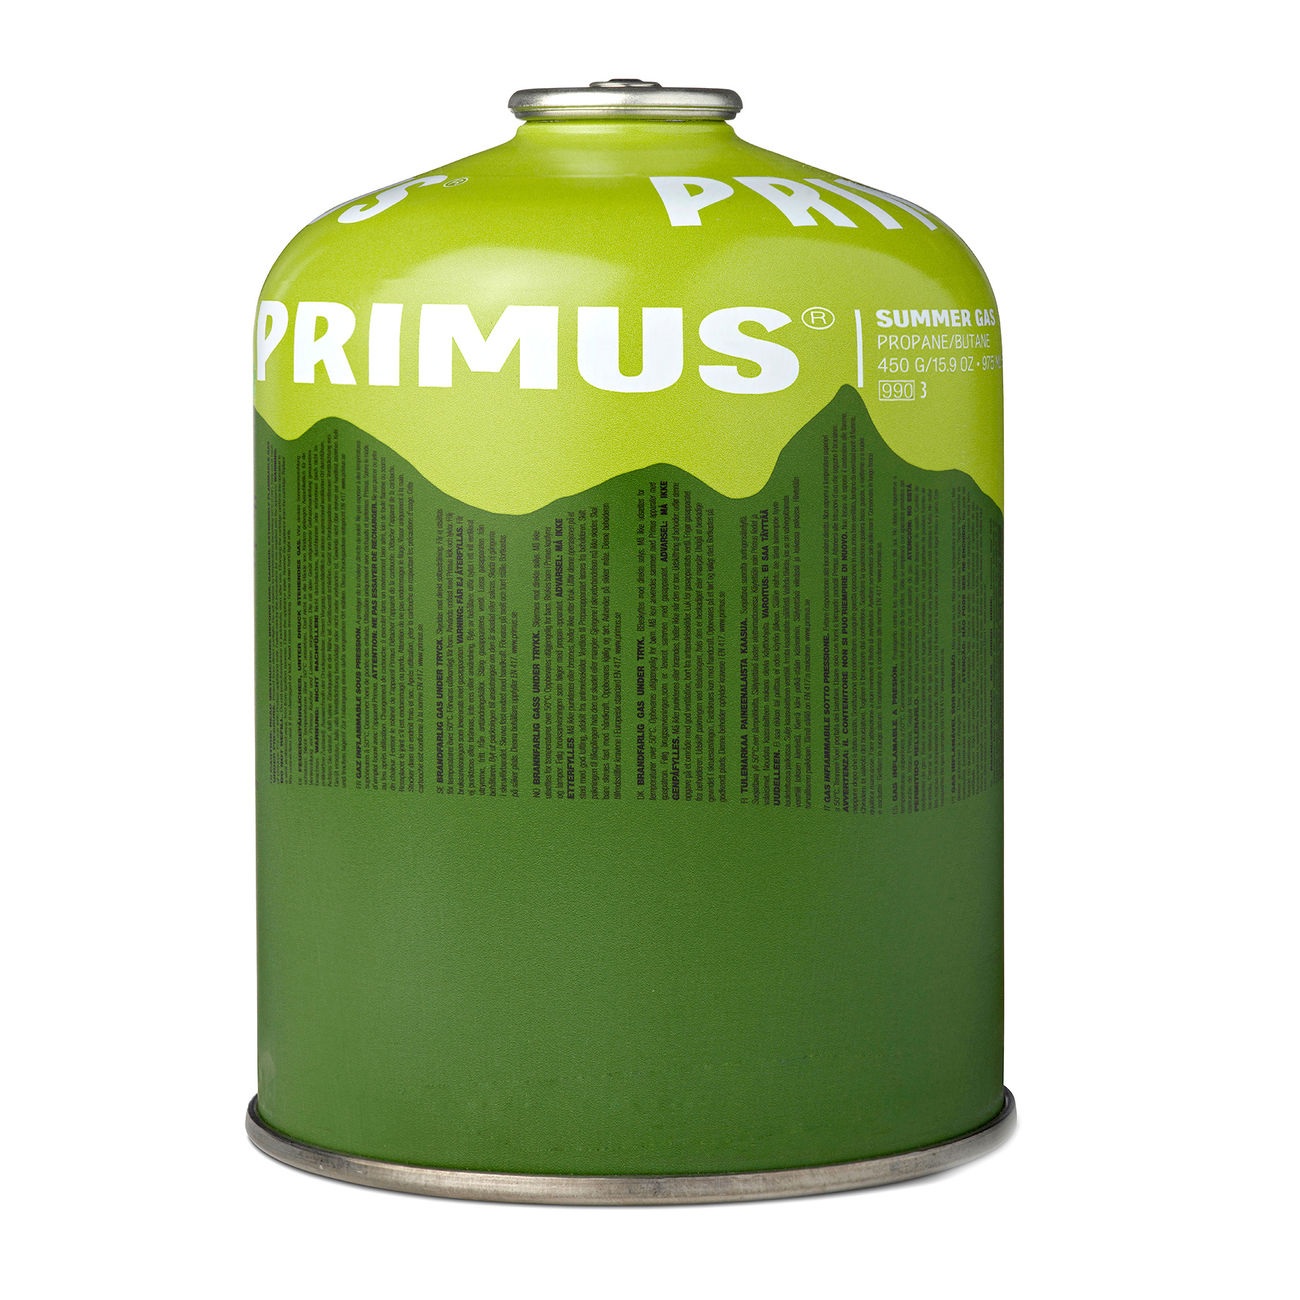 Primus Ventilkartusche Summer Gas 450g